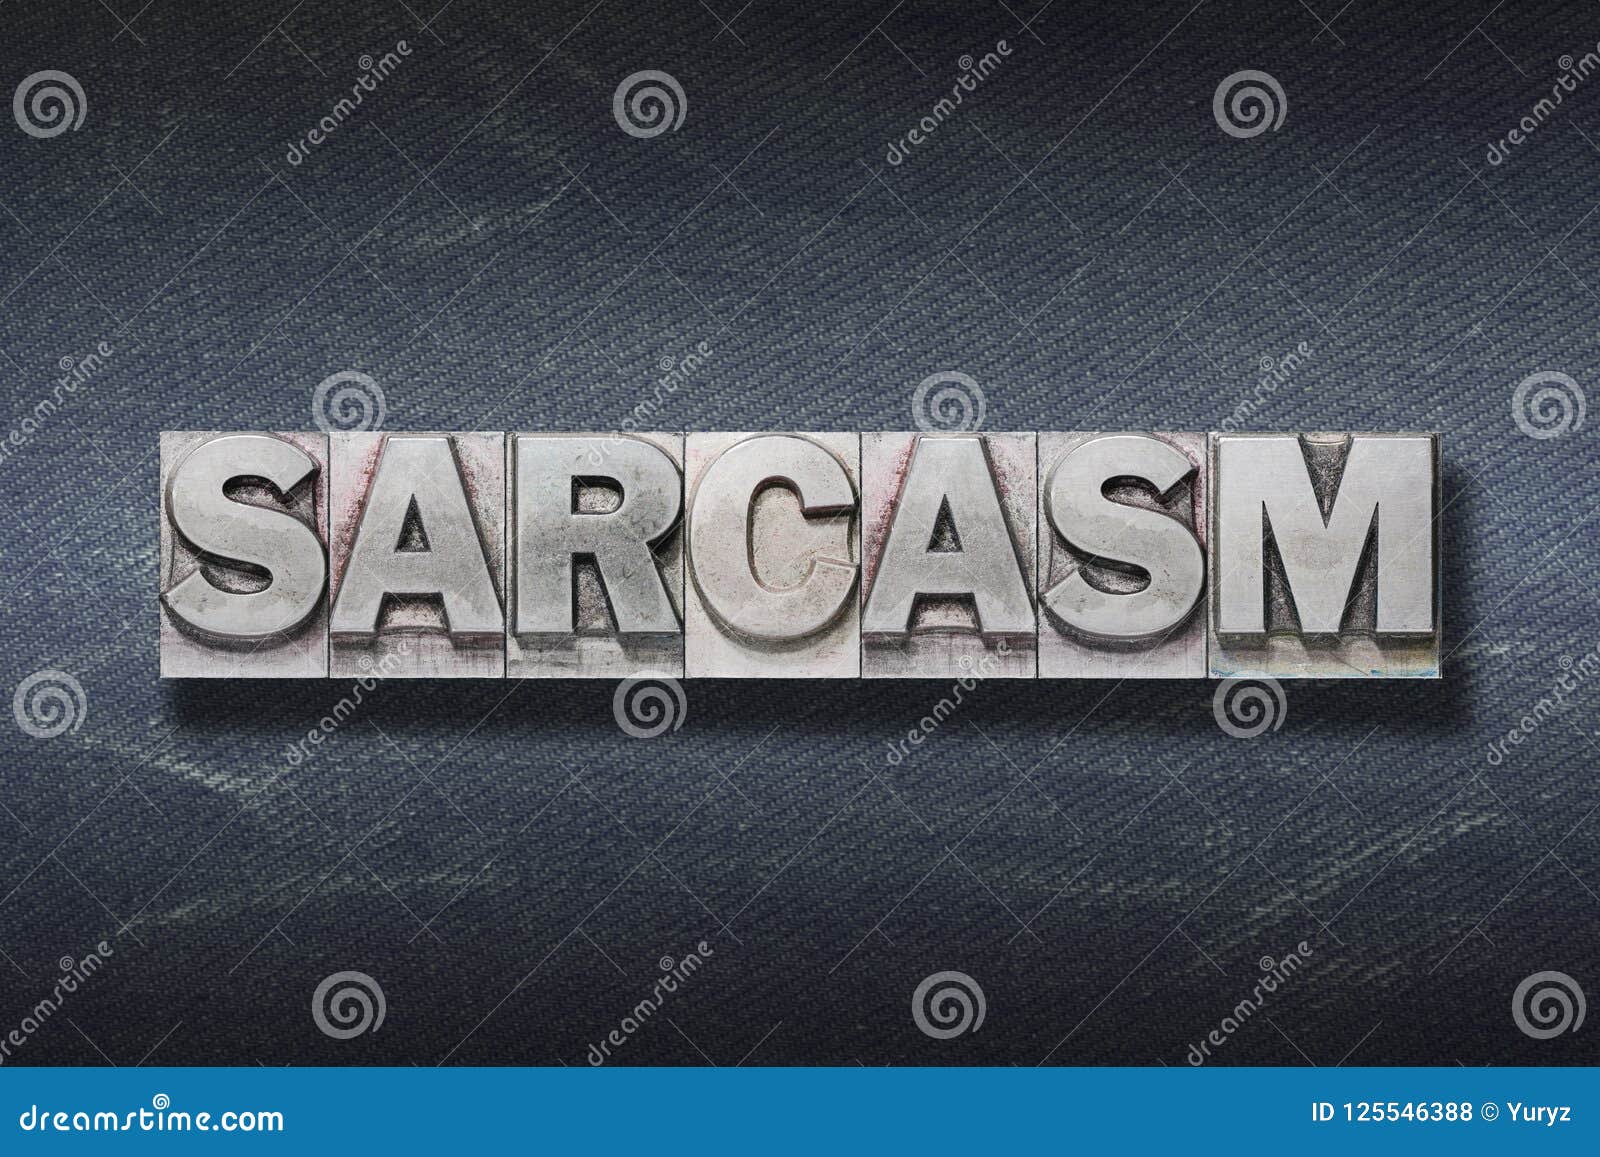 sarcasm word den